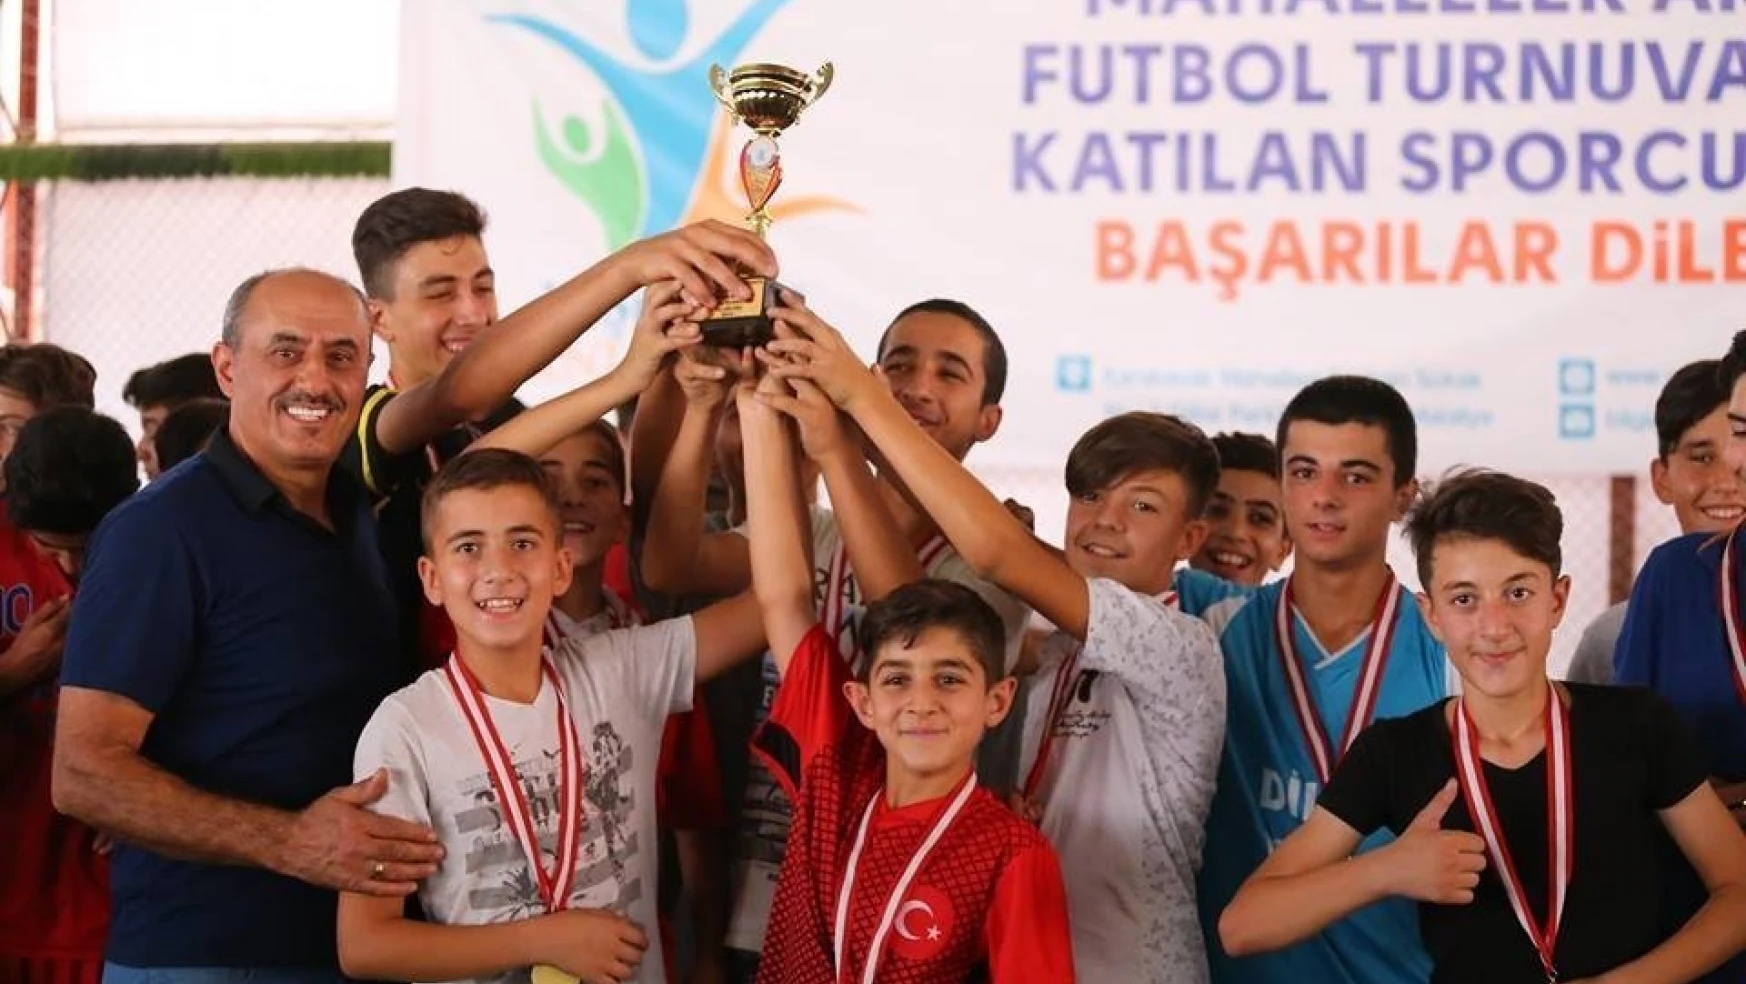 Mahalleler Arası futbol turnuvasında ödül töreni yapıldı
